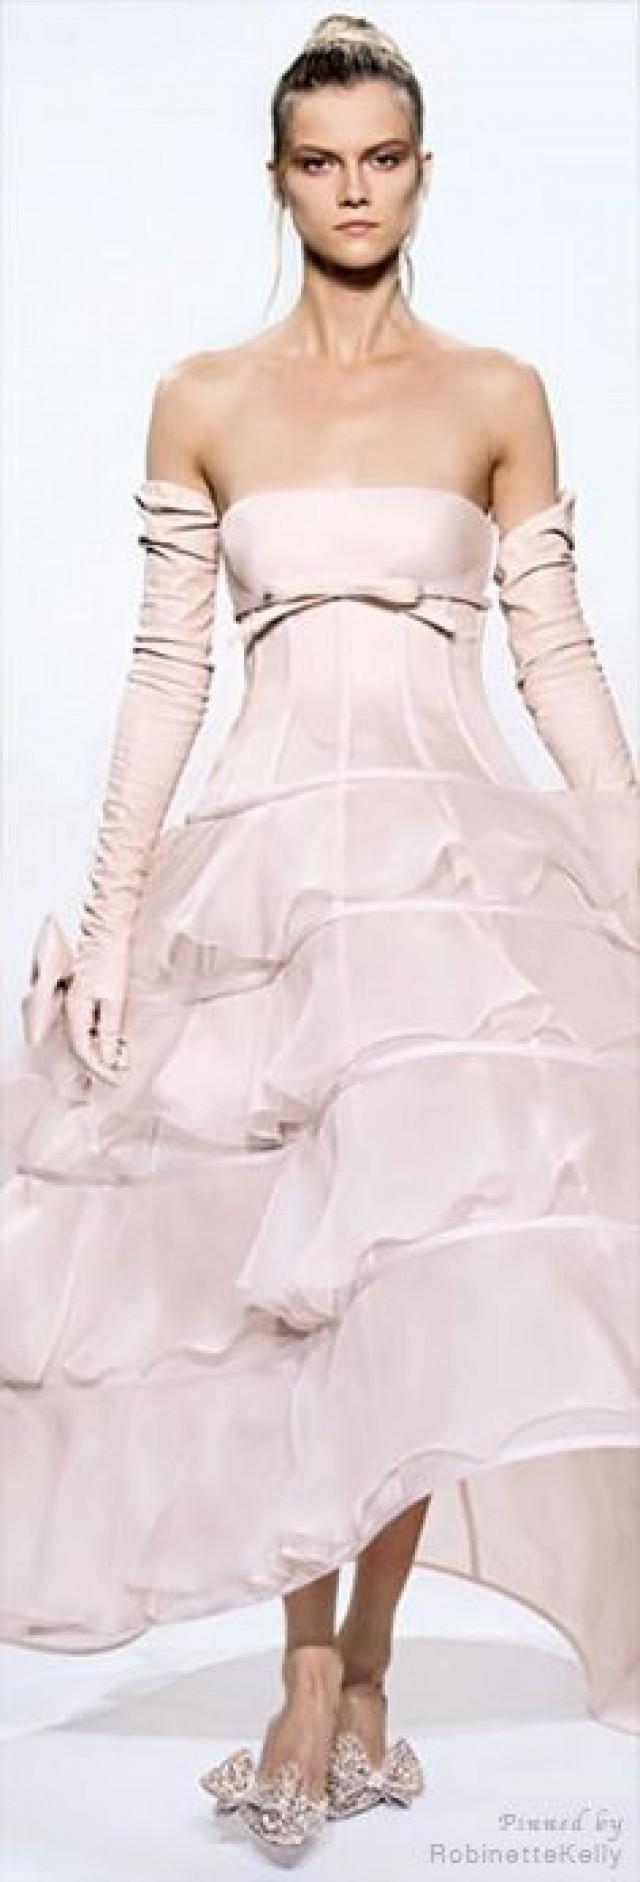 Bridesmaid - Gowns.....Pastel Pinks #2150693 - Weddbook